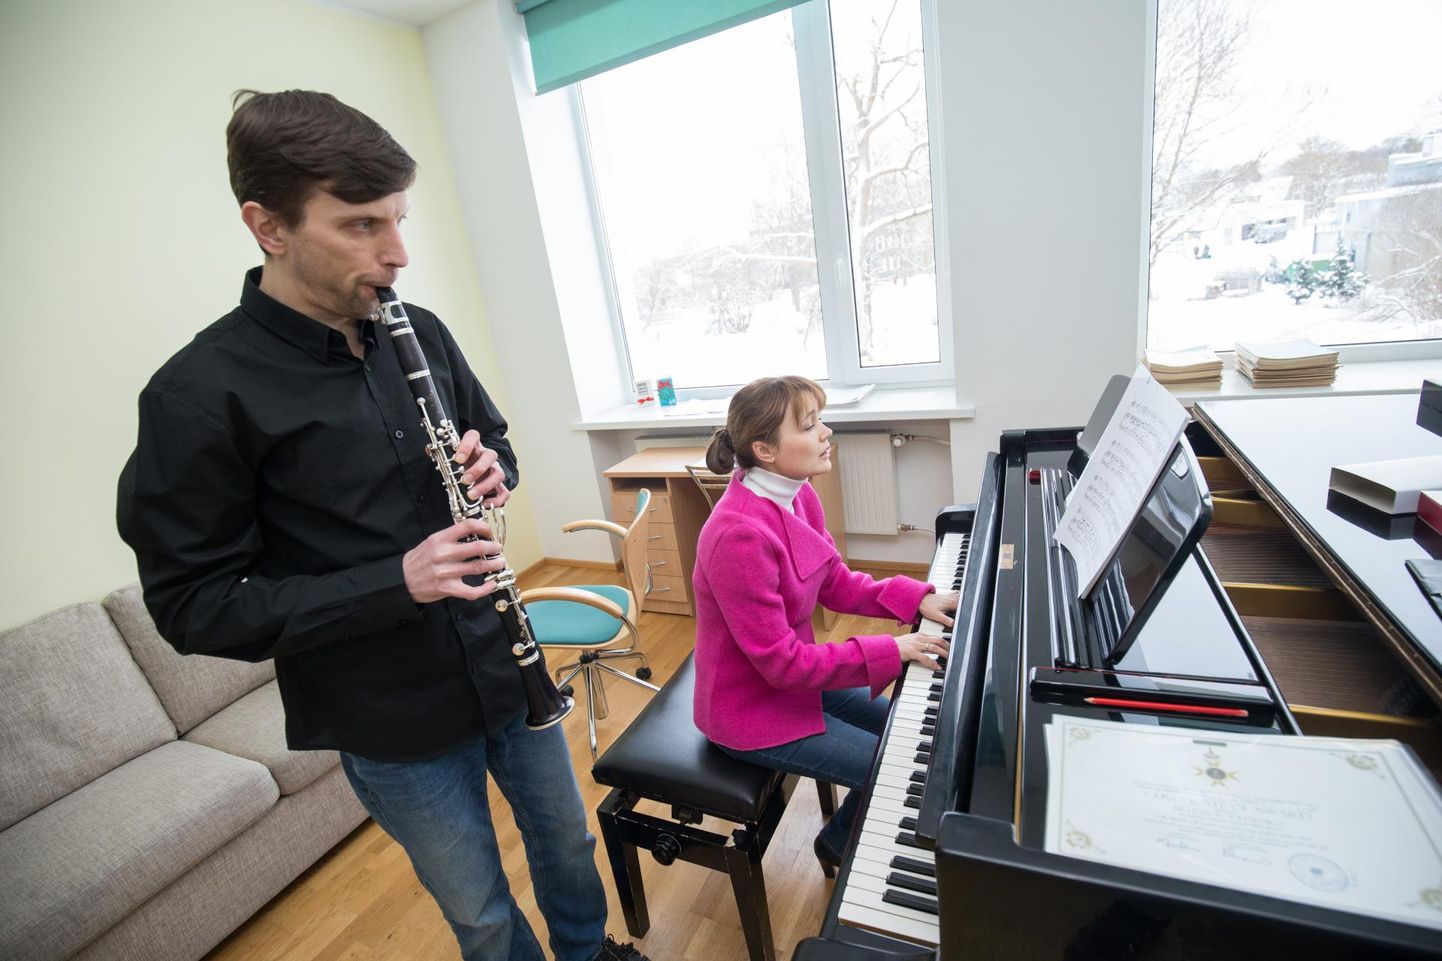 Tapa vallast pärit kammermuusikud Artjom ja Darja Roditšenko õpetavad noori muusikuid Tapa, Väike-Maarja ja Rakvere muusikakoolis.